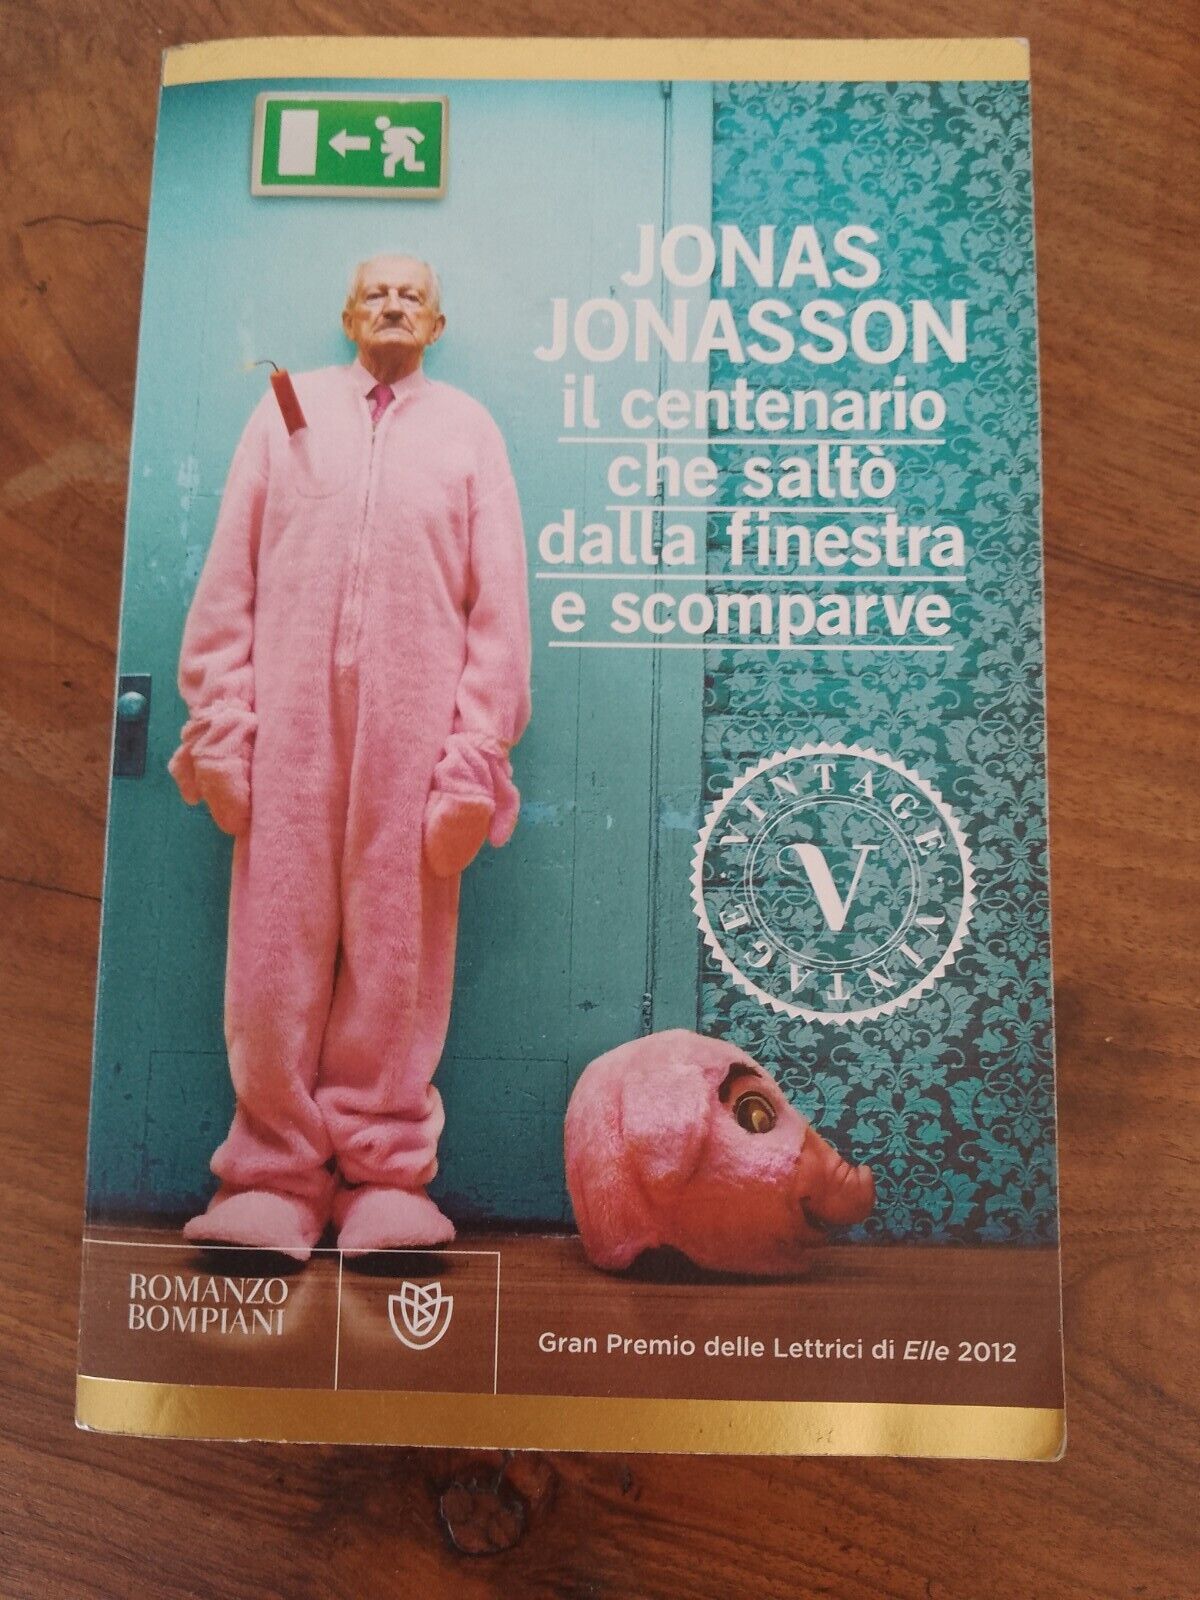 Il centenario che saltò dalla finestra e scomparve, J. Jonasson, Bompiani